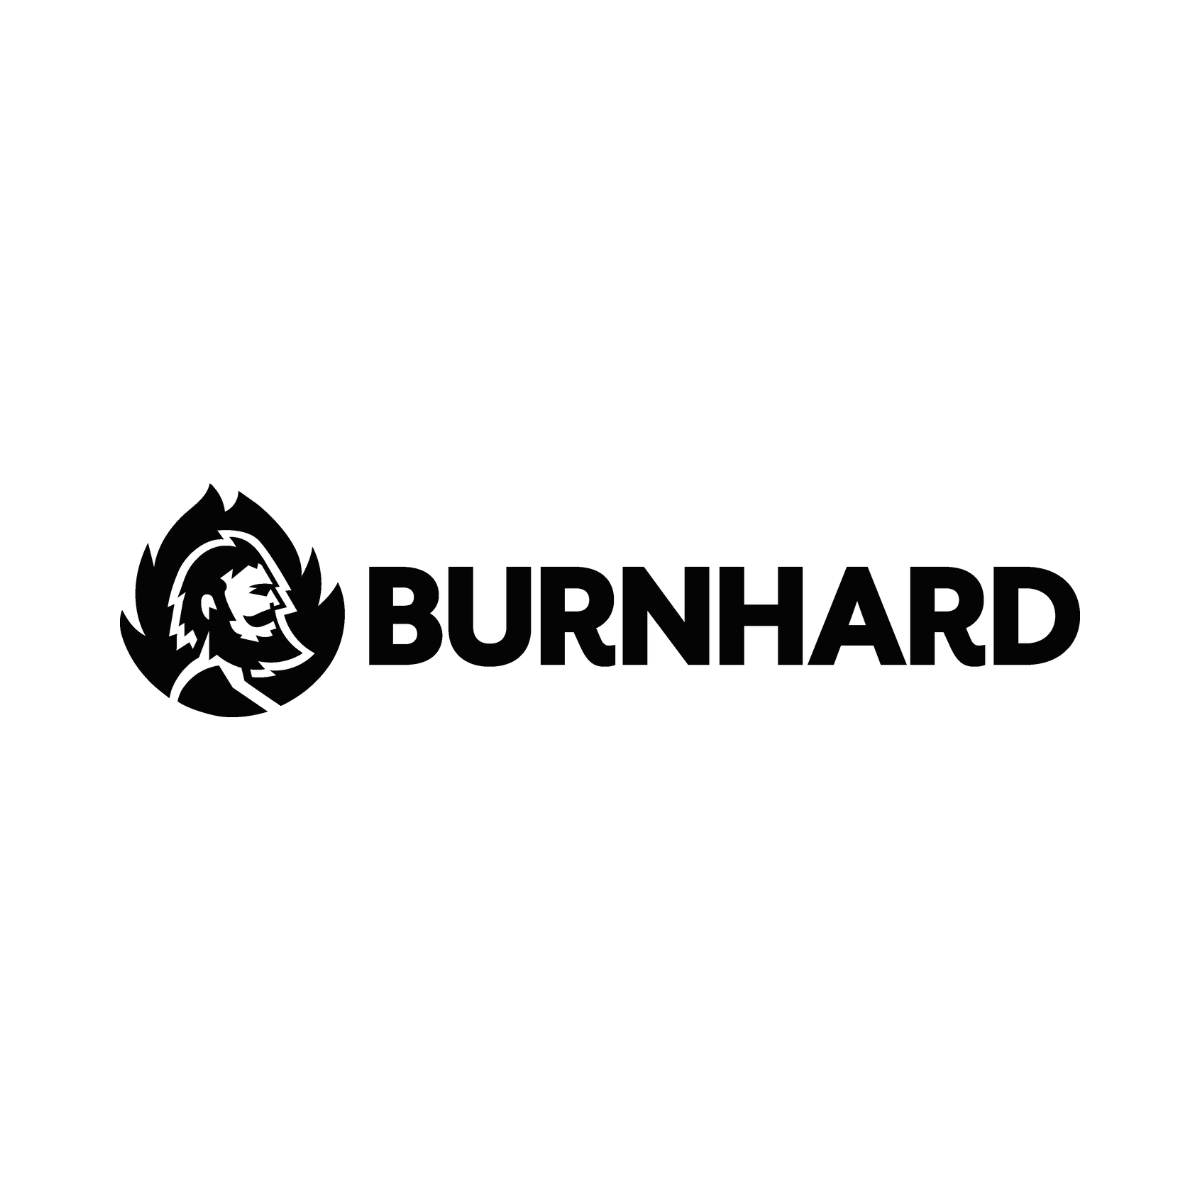 Burnhard-original-logo-